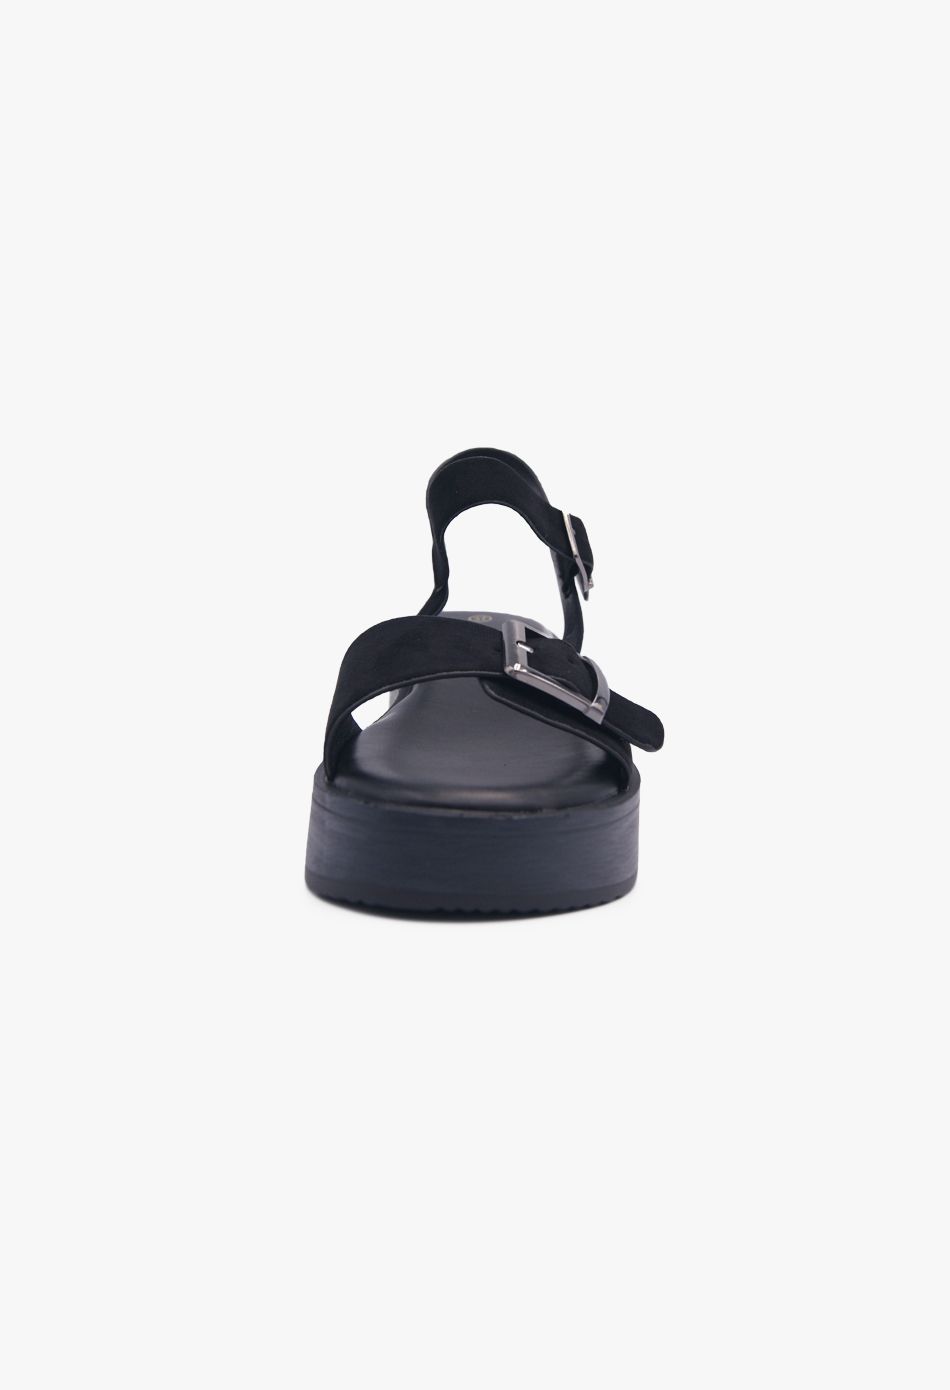 Καλοκαιρινές Γυναικείες Πλατφόρμες Suede με Τόκα Μαύρο / F1513-black Ανοιχτά Παπούτσια joya.gr